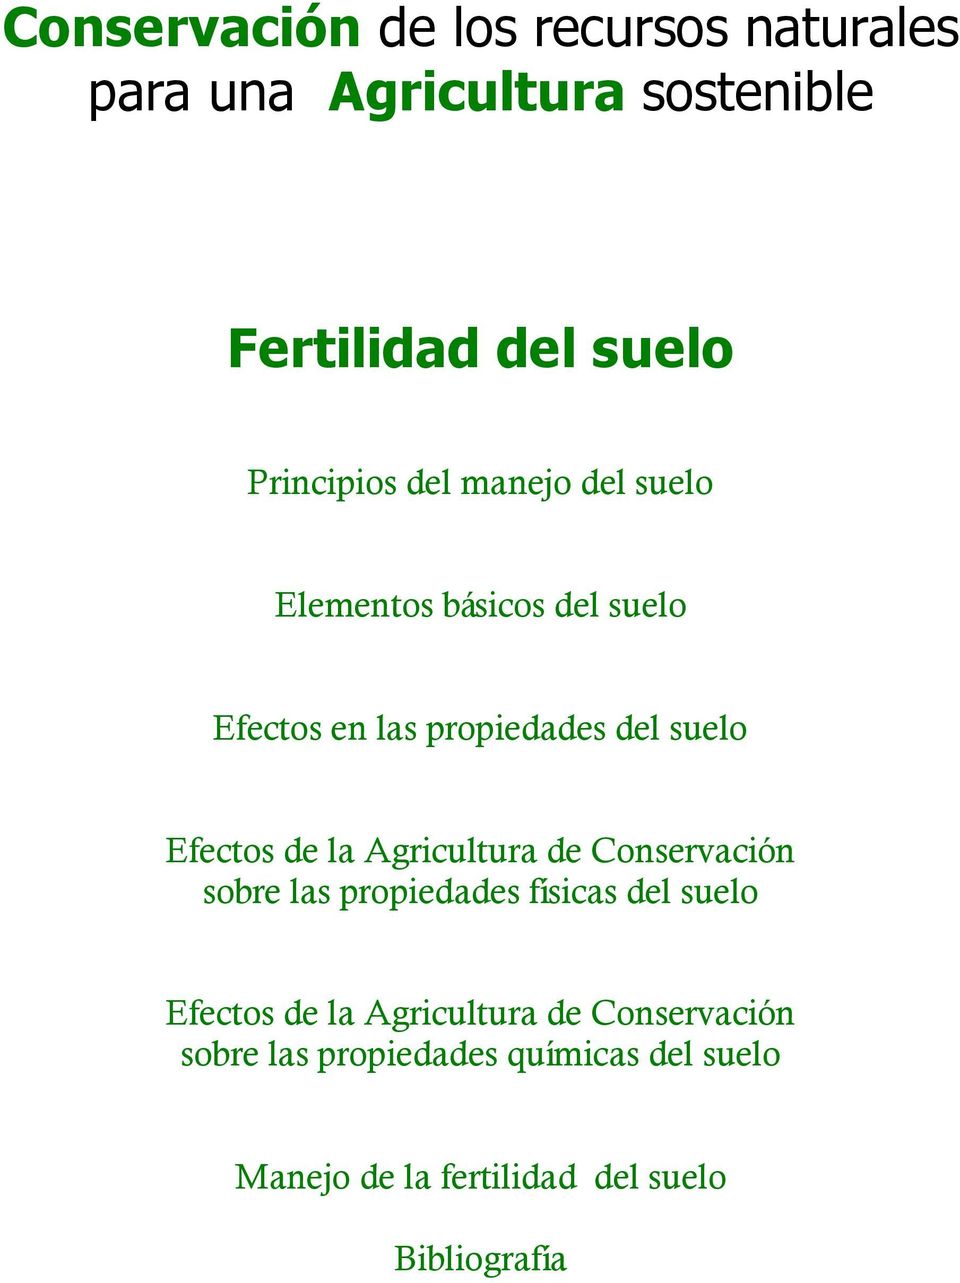 Efectos de la Agricultura de Conservación sobre las propiedades físicas del suelo Efectos de la